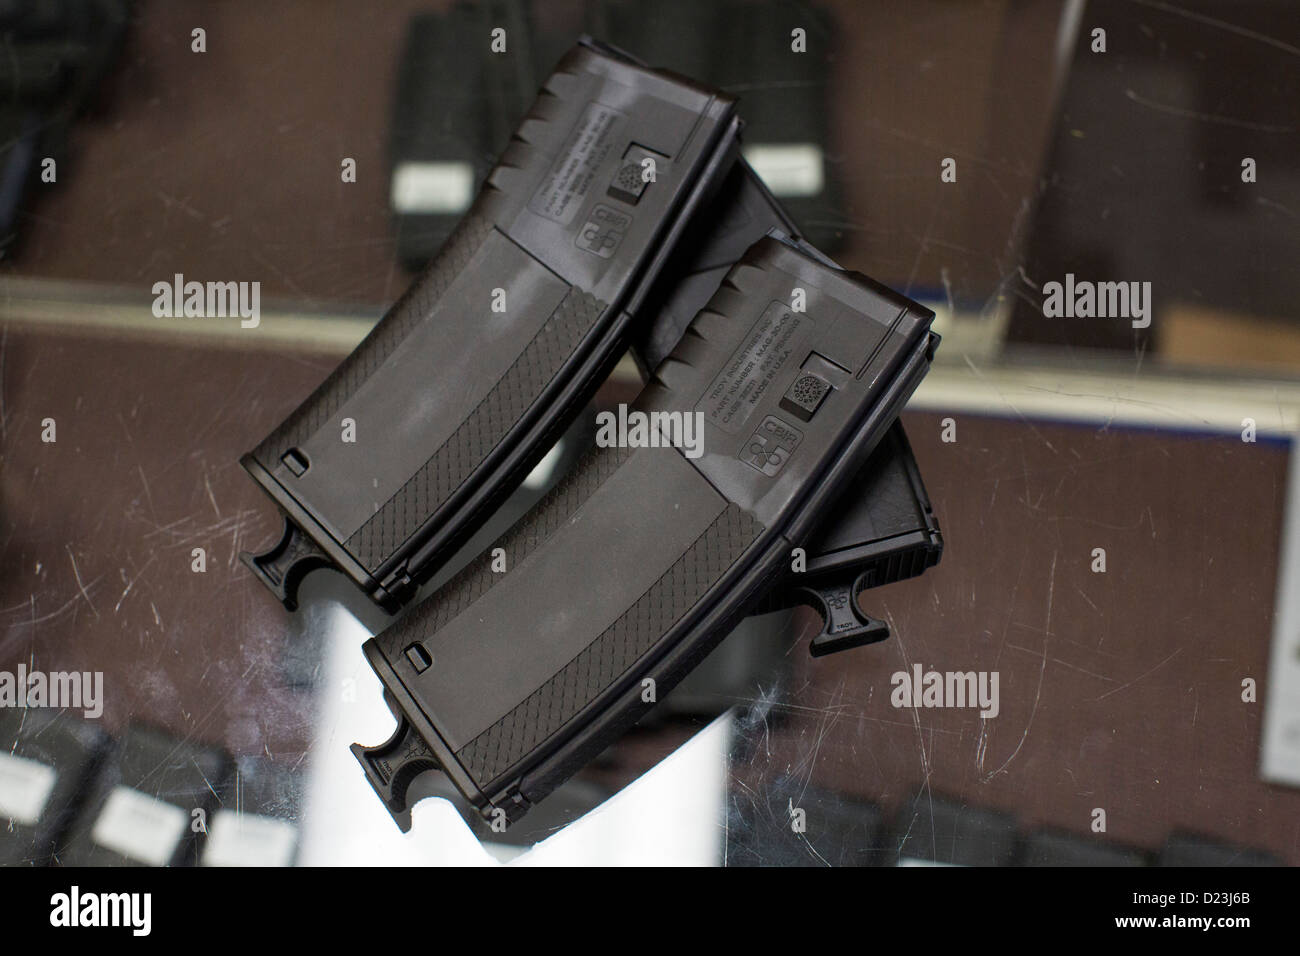 Ronde haute capacité 30 magazines d'un fusil d'assaut sur l'affichage à un magasin d'armes. Banque D'Images